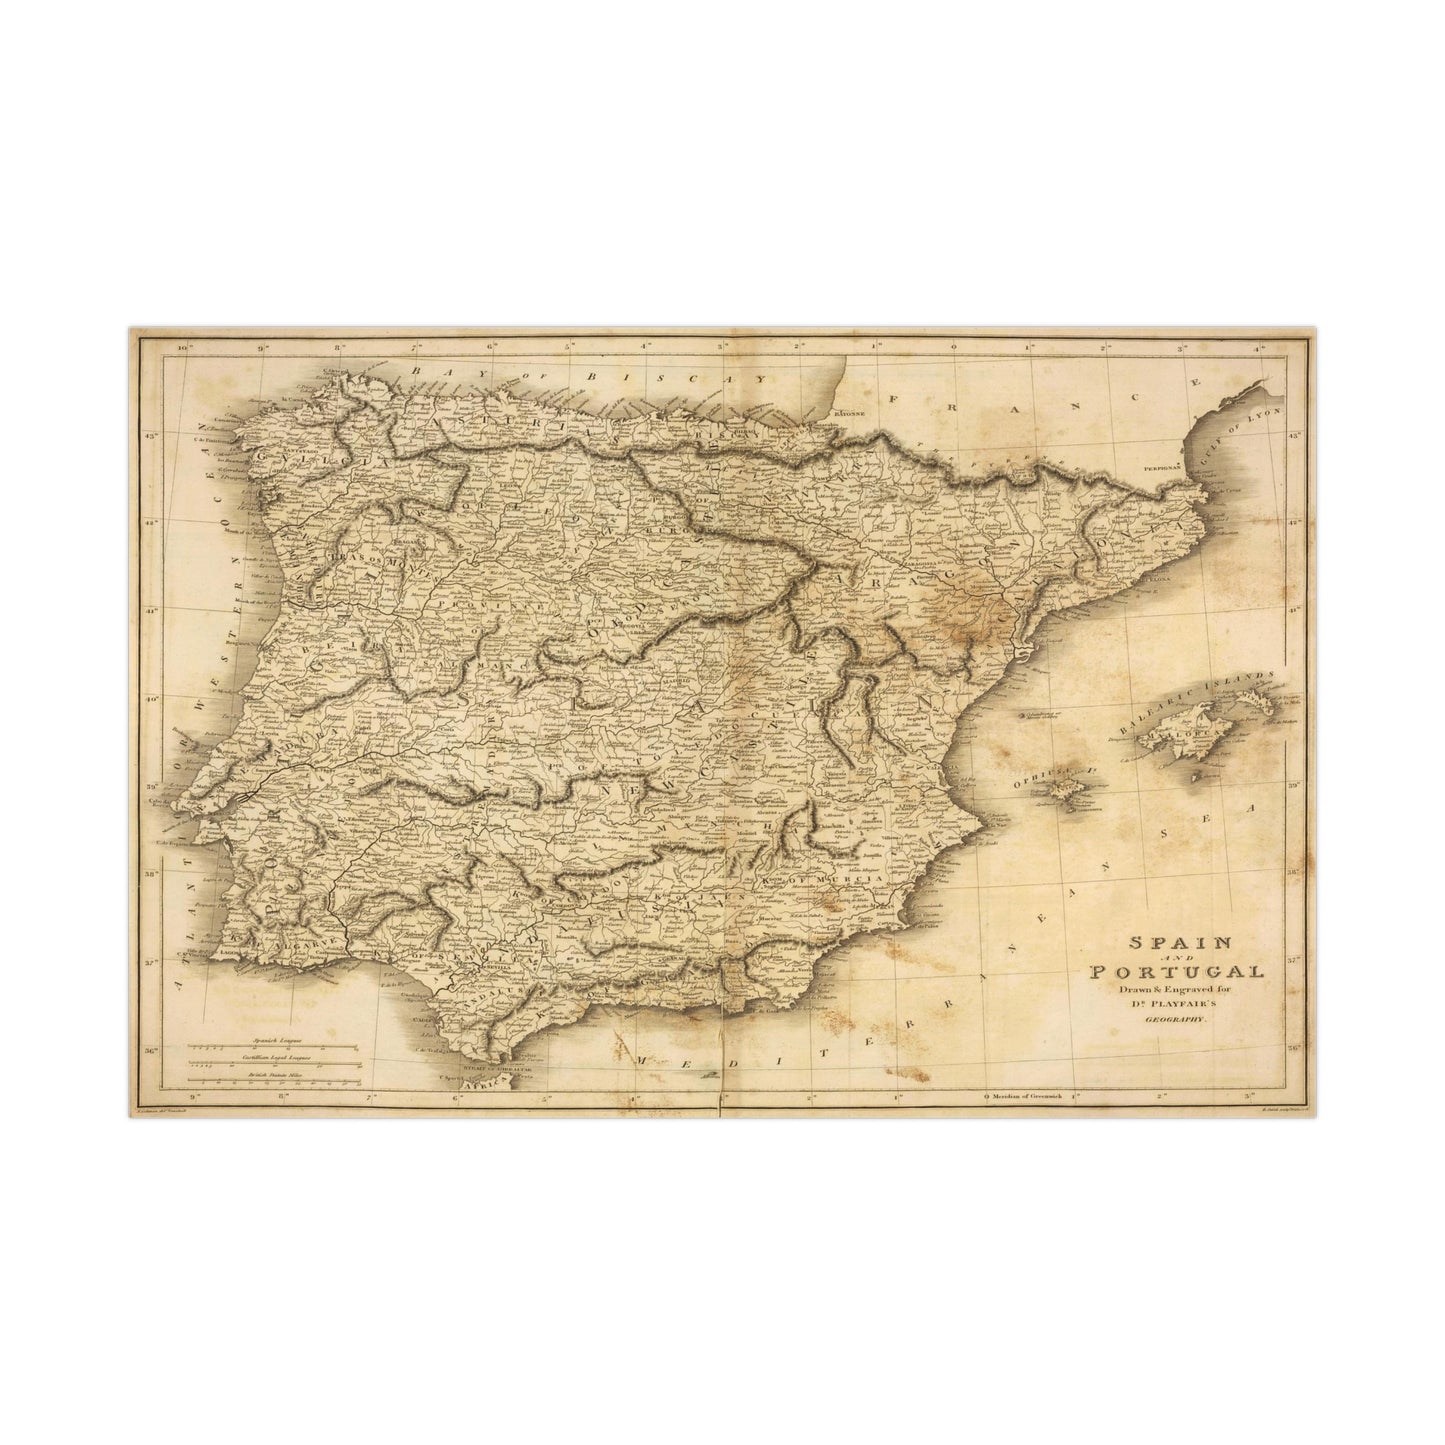 Spain & Portugal - 1814 Map (Museum Paper Print)